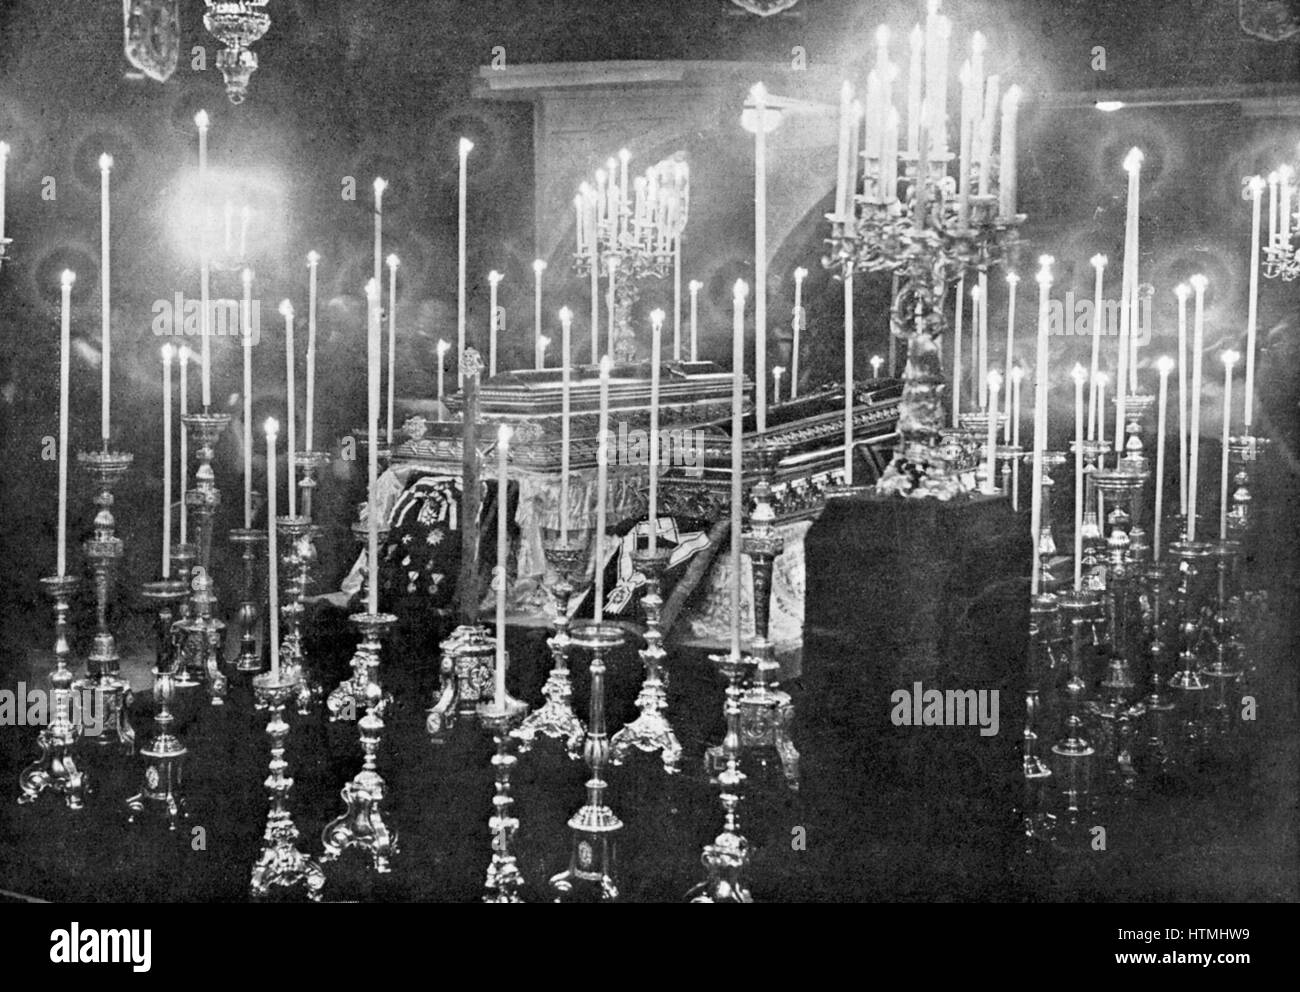 L'assassinio dell'arciduca Francesco Ferdinando (Franz Ferdinand) 1863-1914, erede al trono austriaco a Sarajevo il 28 giugno 1914. Le bare di Franz Ferdinand e l'Arciduchessa Sophie giacenti nello stato Foto Stock